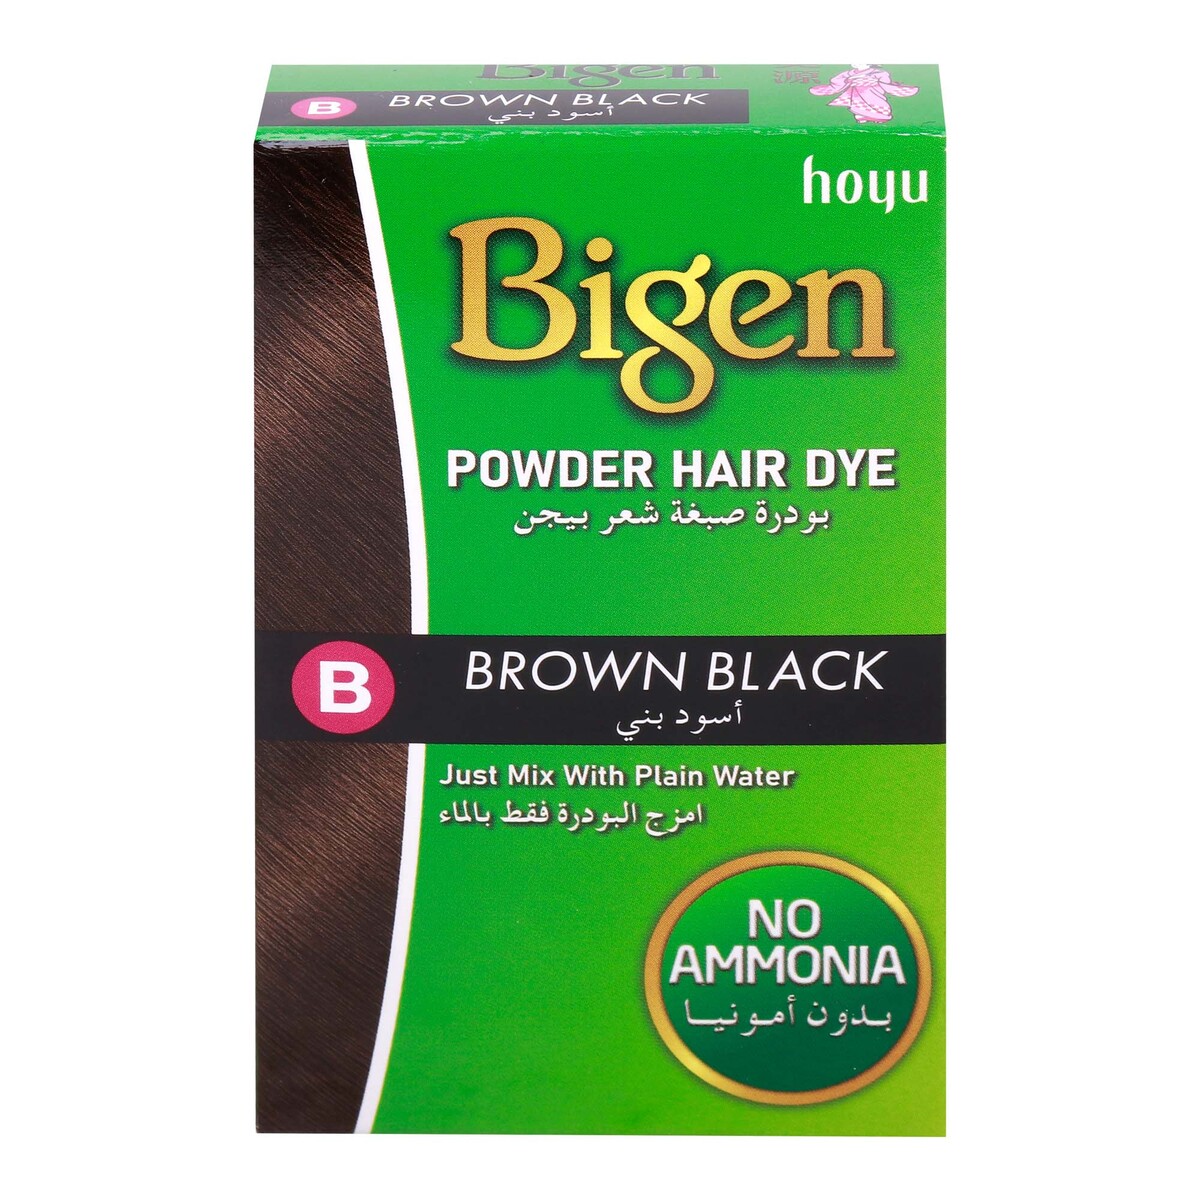 Bigen Brown Black Hair Dye Powder 6 g